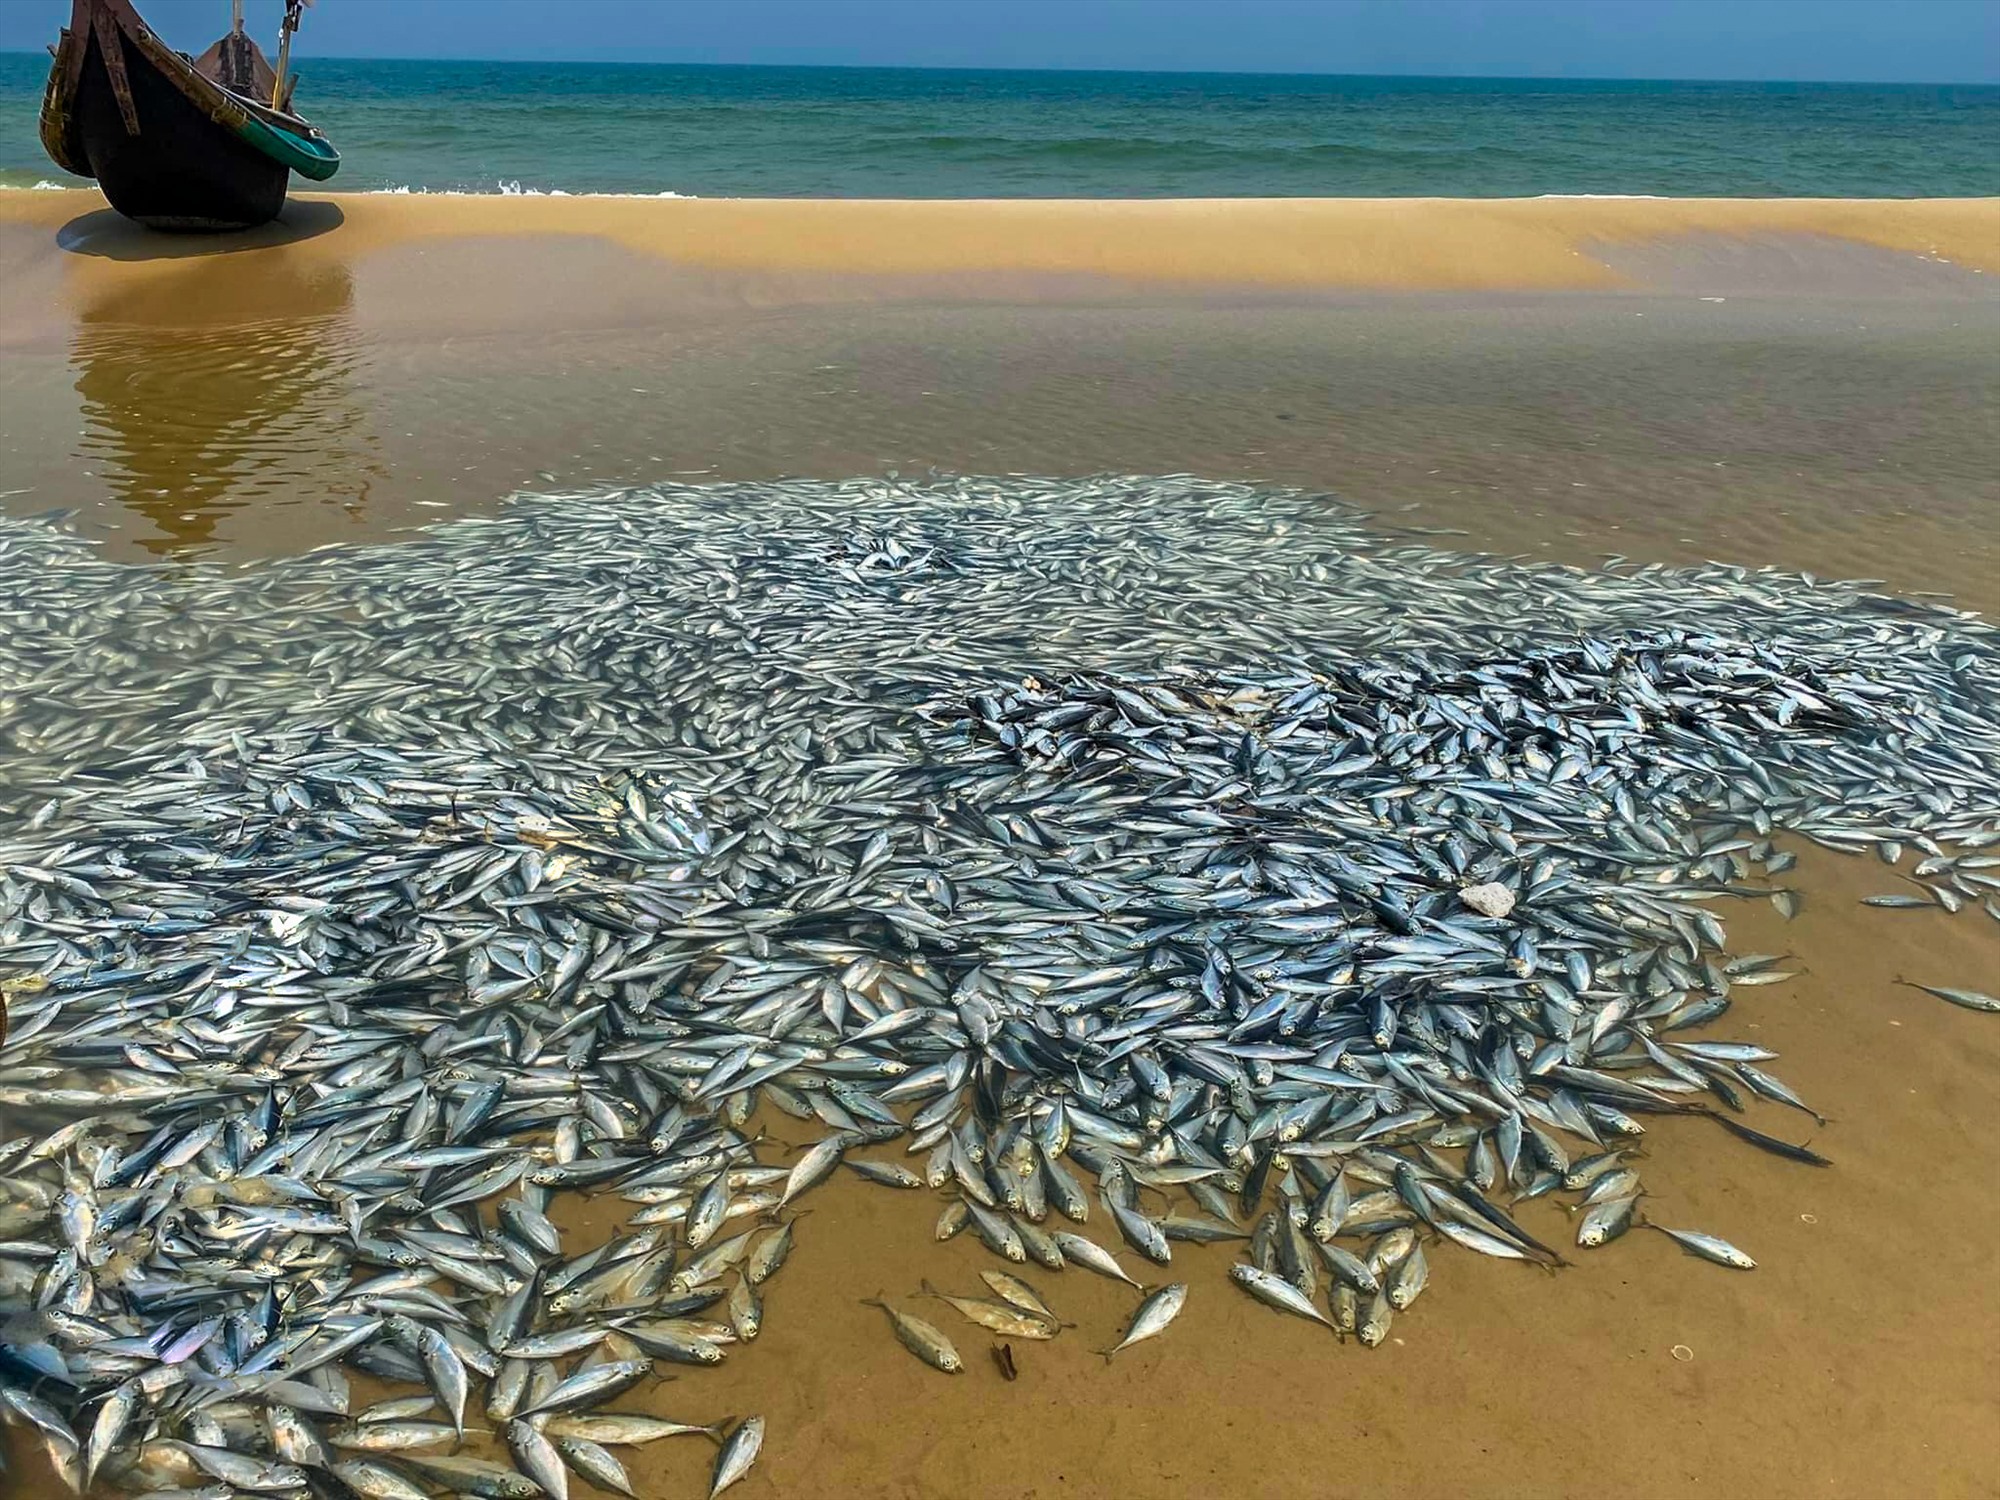 Khoảng 2 tấn cá tròng được thuyền của ngư dân Võ Lương đánh bắt được khi hành nghề bủa xăm cách bờ gần 1 hải lý - Ảnh: NDCC